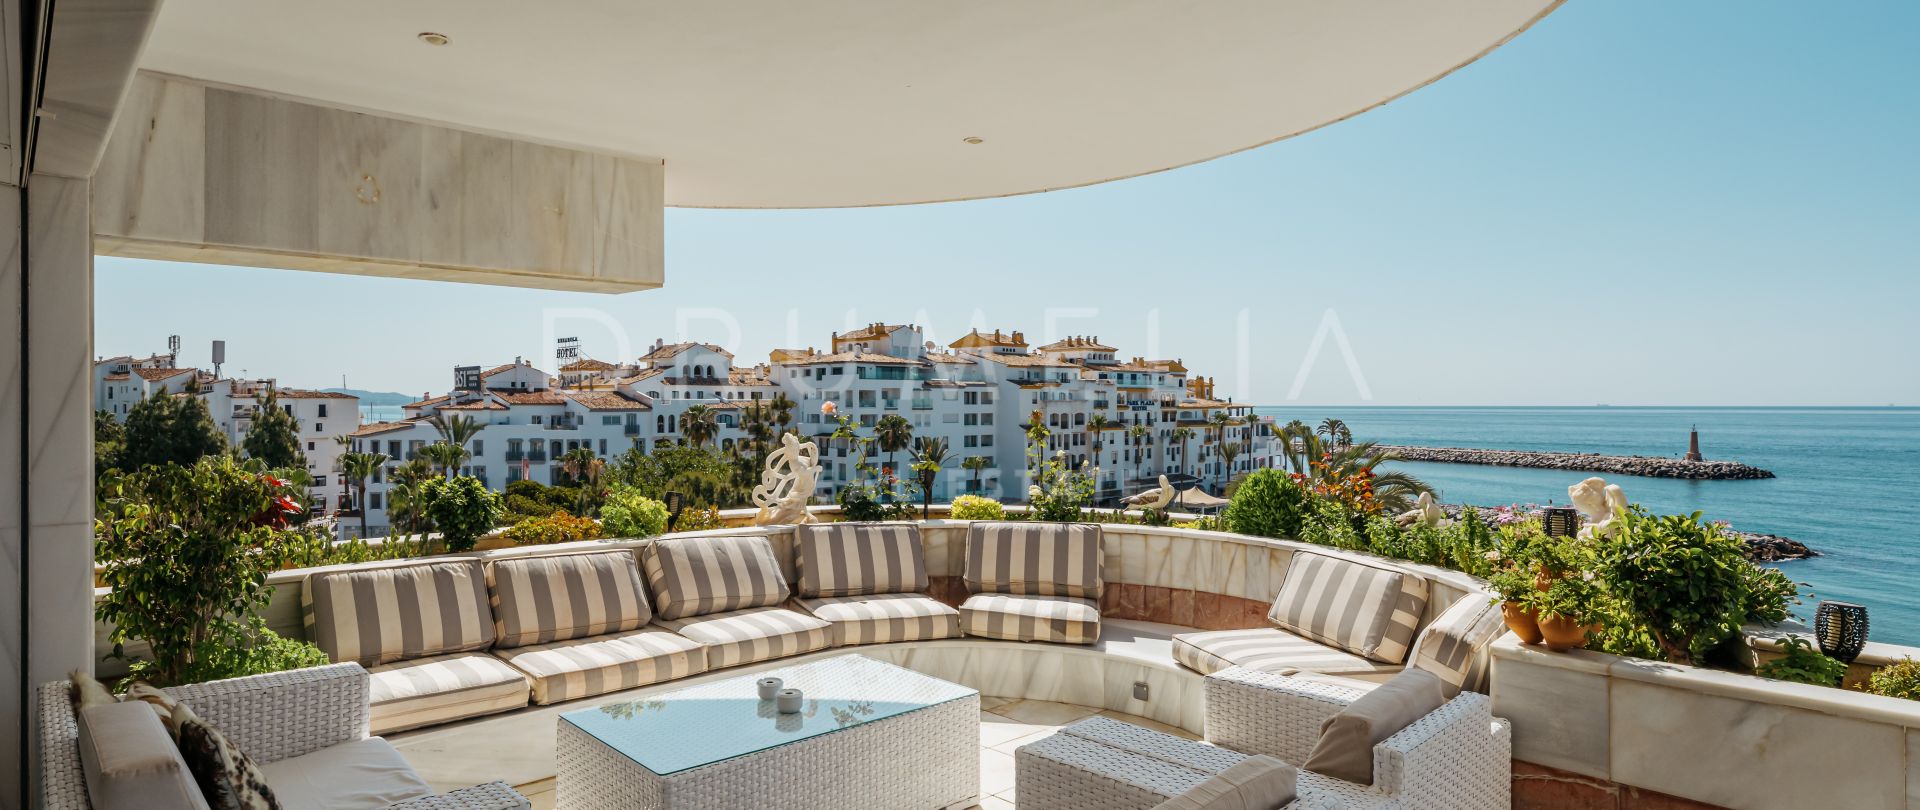 Uniek penthouse aan het strand met prachtig uitzicht en zwembad in Puerto Banus, Marbella.